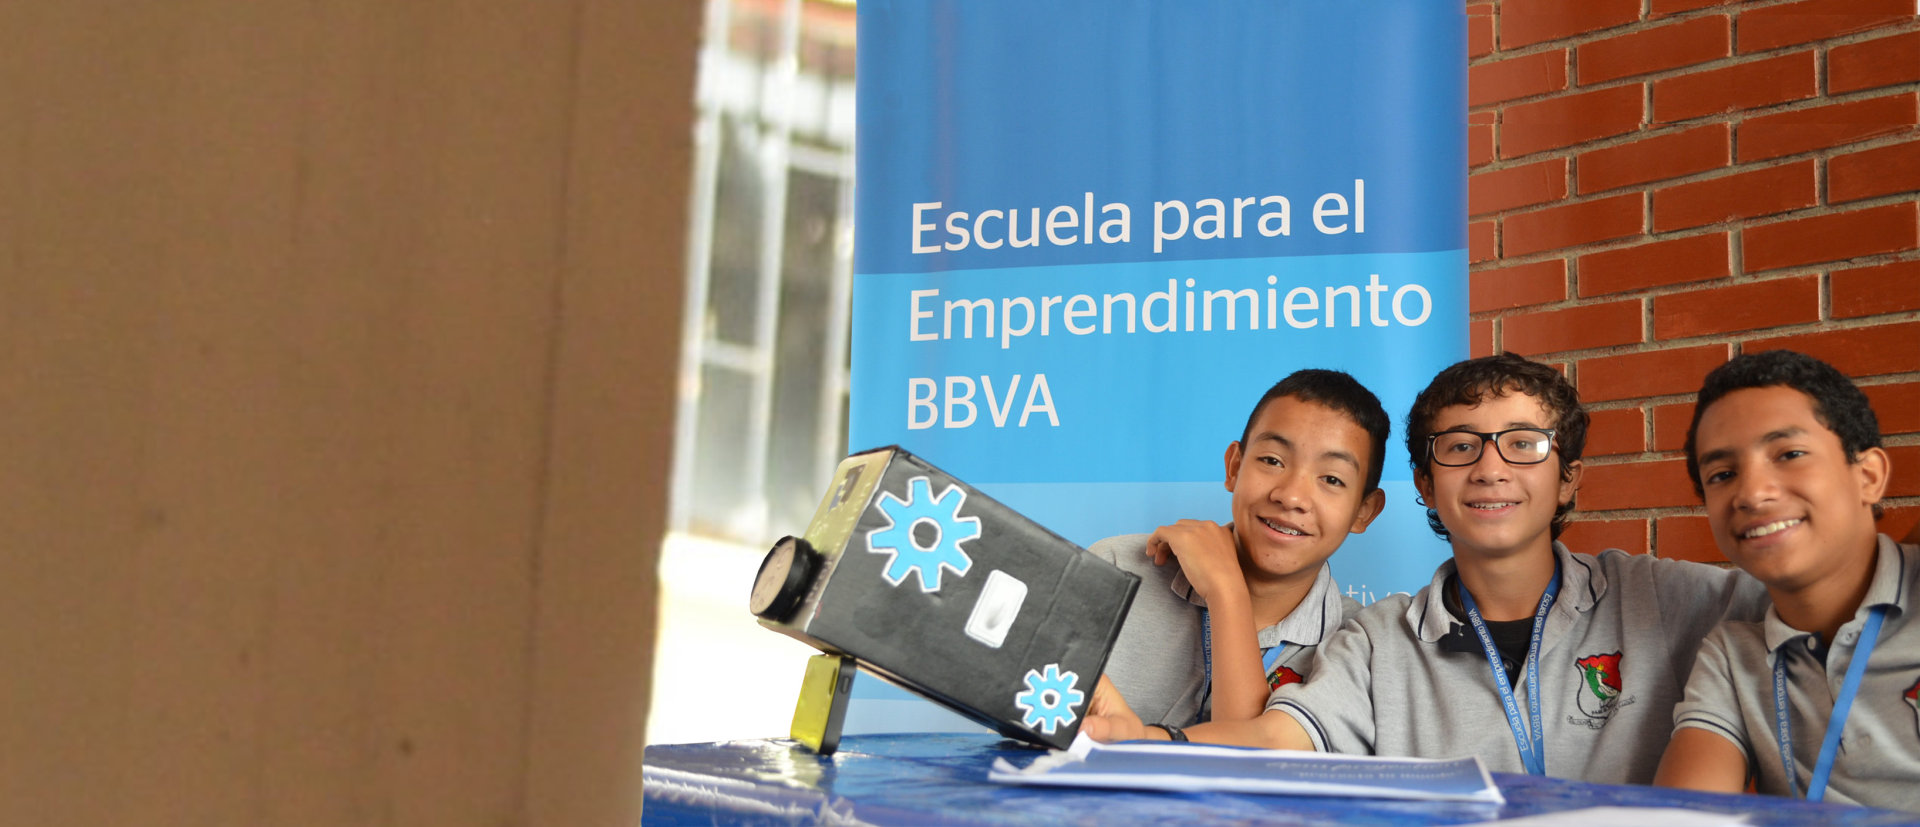 BBVA Colombia invirtió 2,6 millones de dólares en apoyo social en 2017